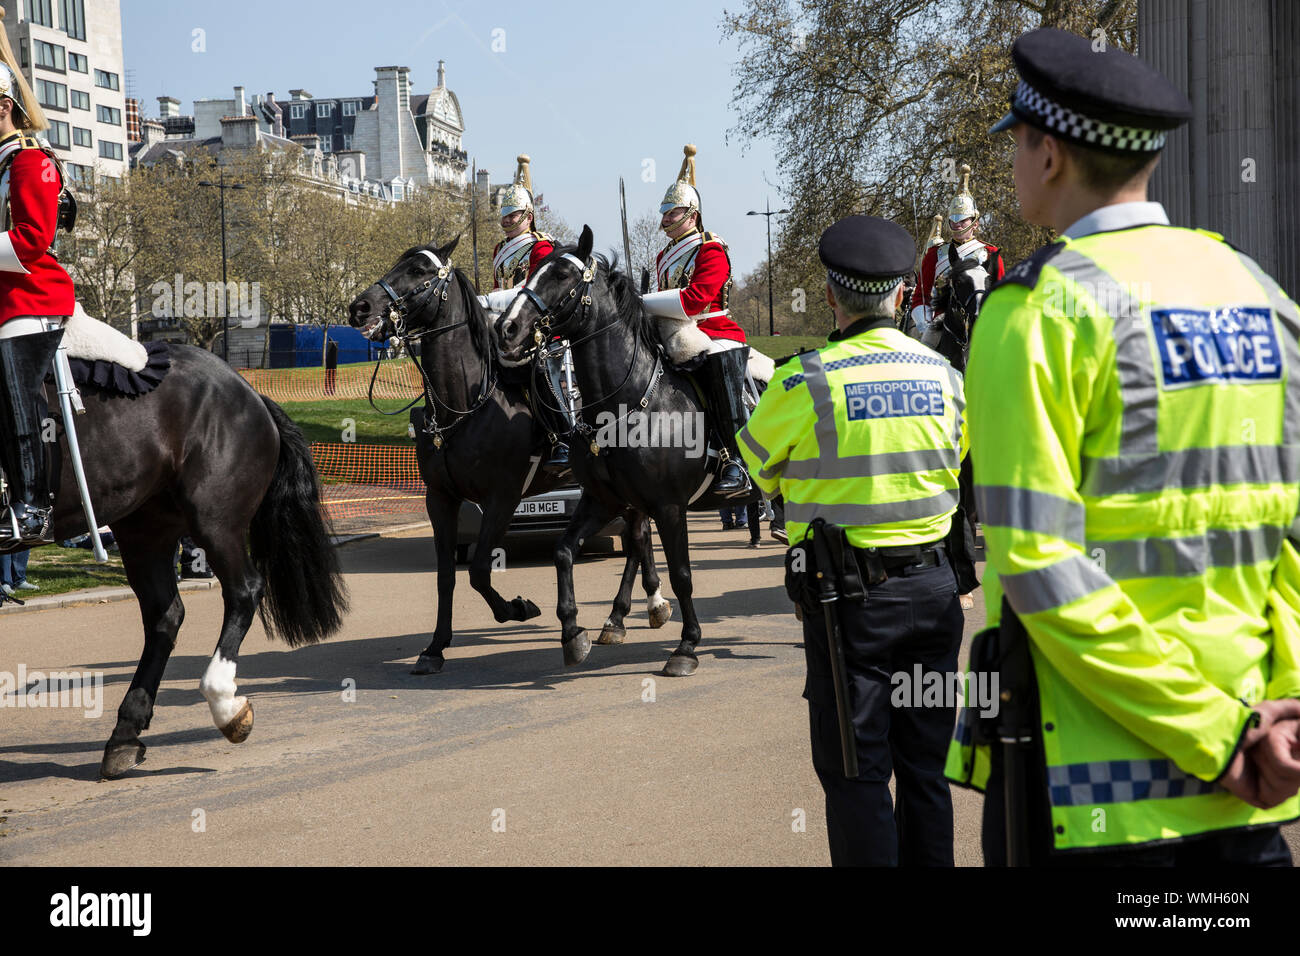 Aussterben Rebellion Demonstranten versammeln sich in Hyde Park Corner weiterhin das Klima Protest durch Marble Arch versammeln in Piccadilly Circus, Großbritannien Stockfoto